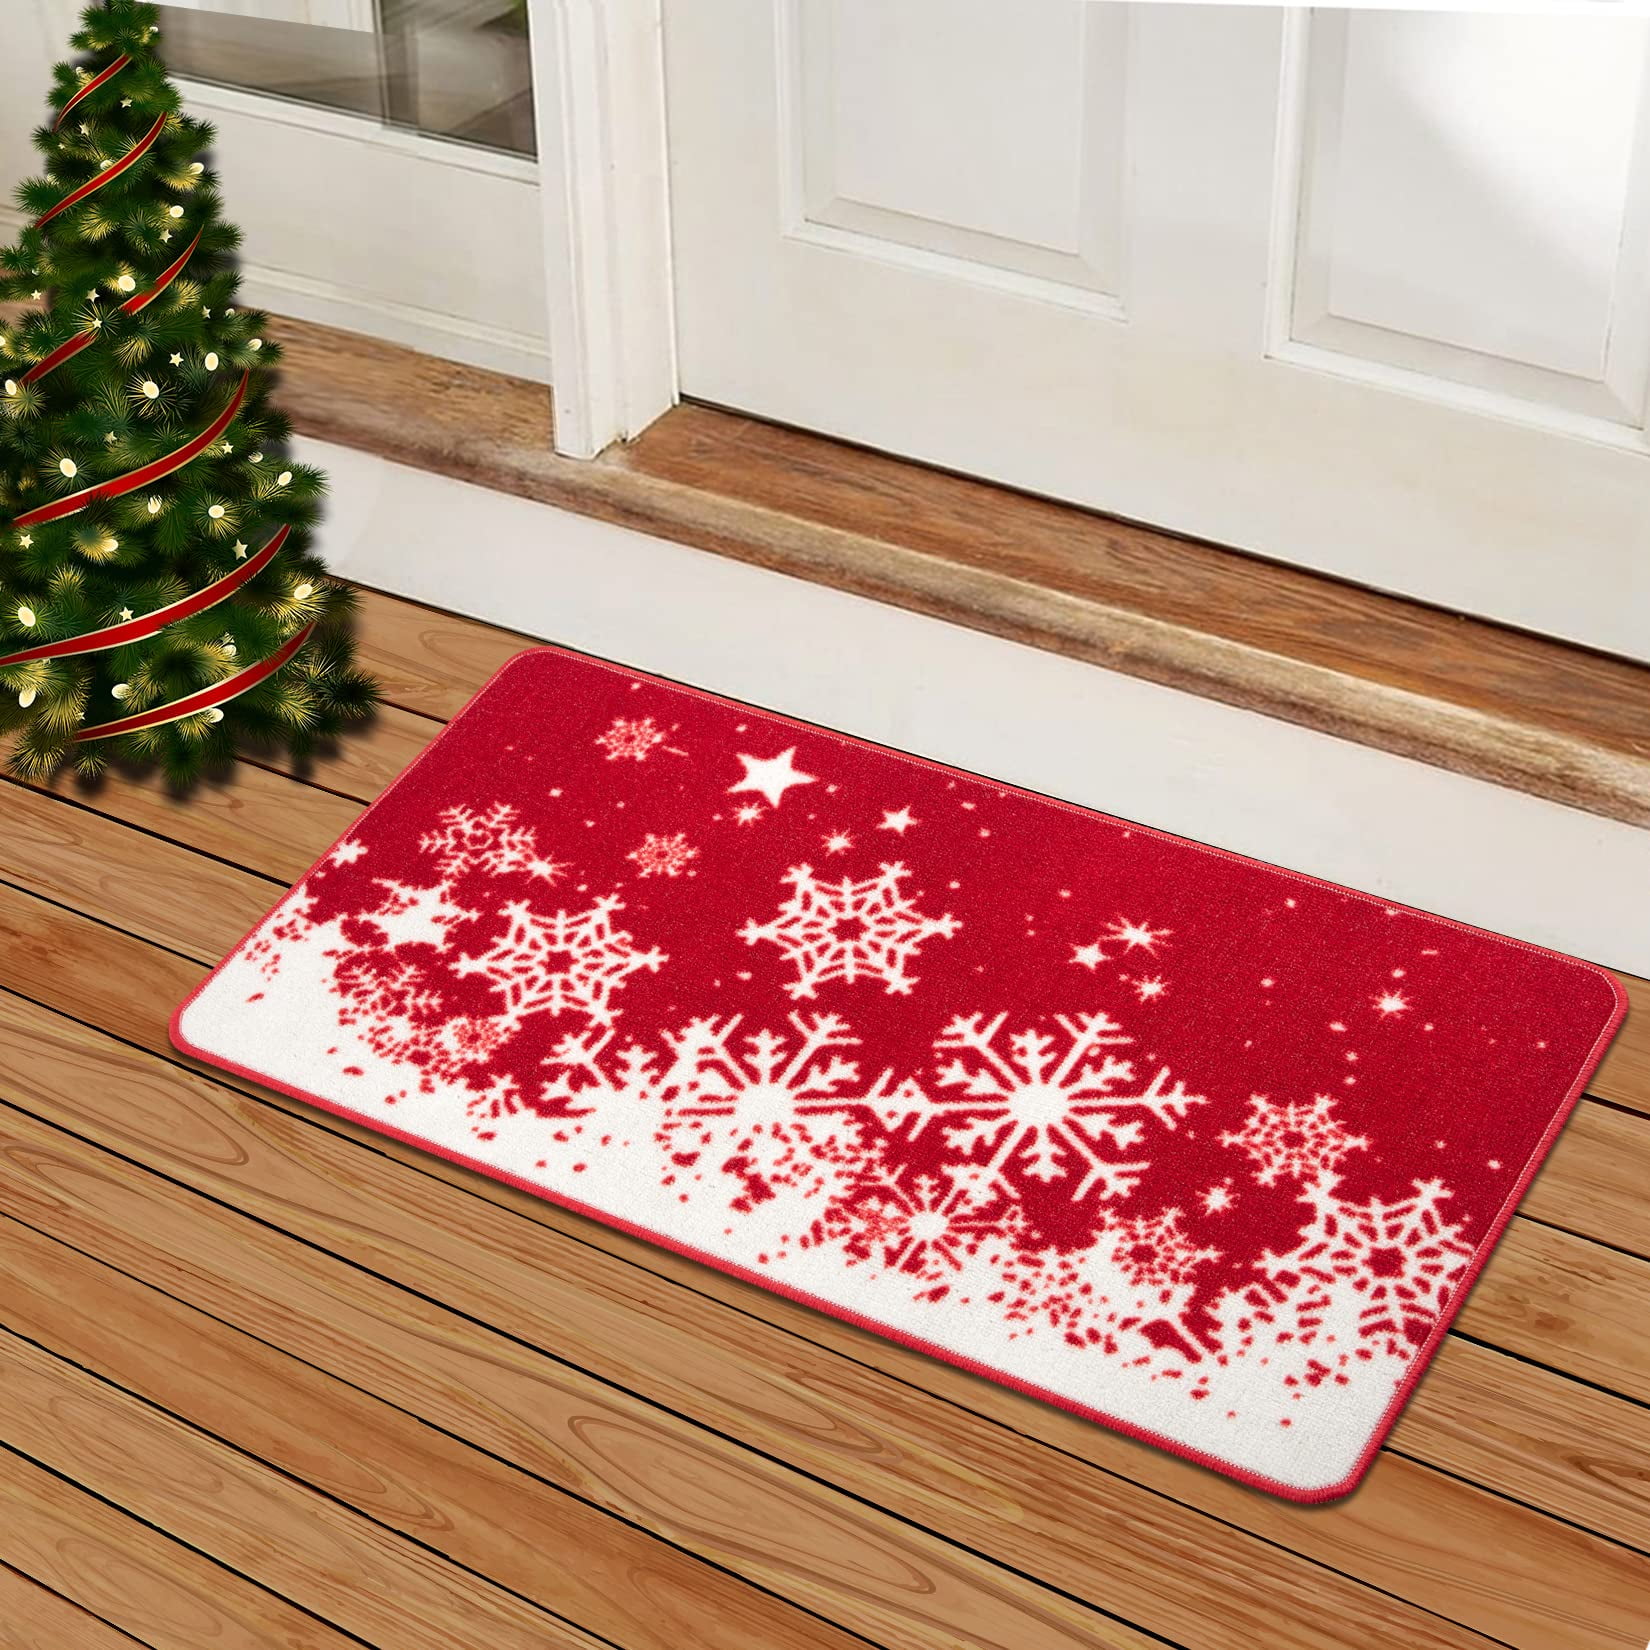 Christmas Door Mat Outdoor for Front Door Decorations , Red Buffalo Plaid  Snowflakes Merry Christmas Doormat,Winter Holiday Welcome Floor Mat Rug